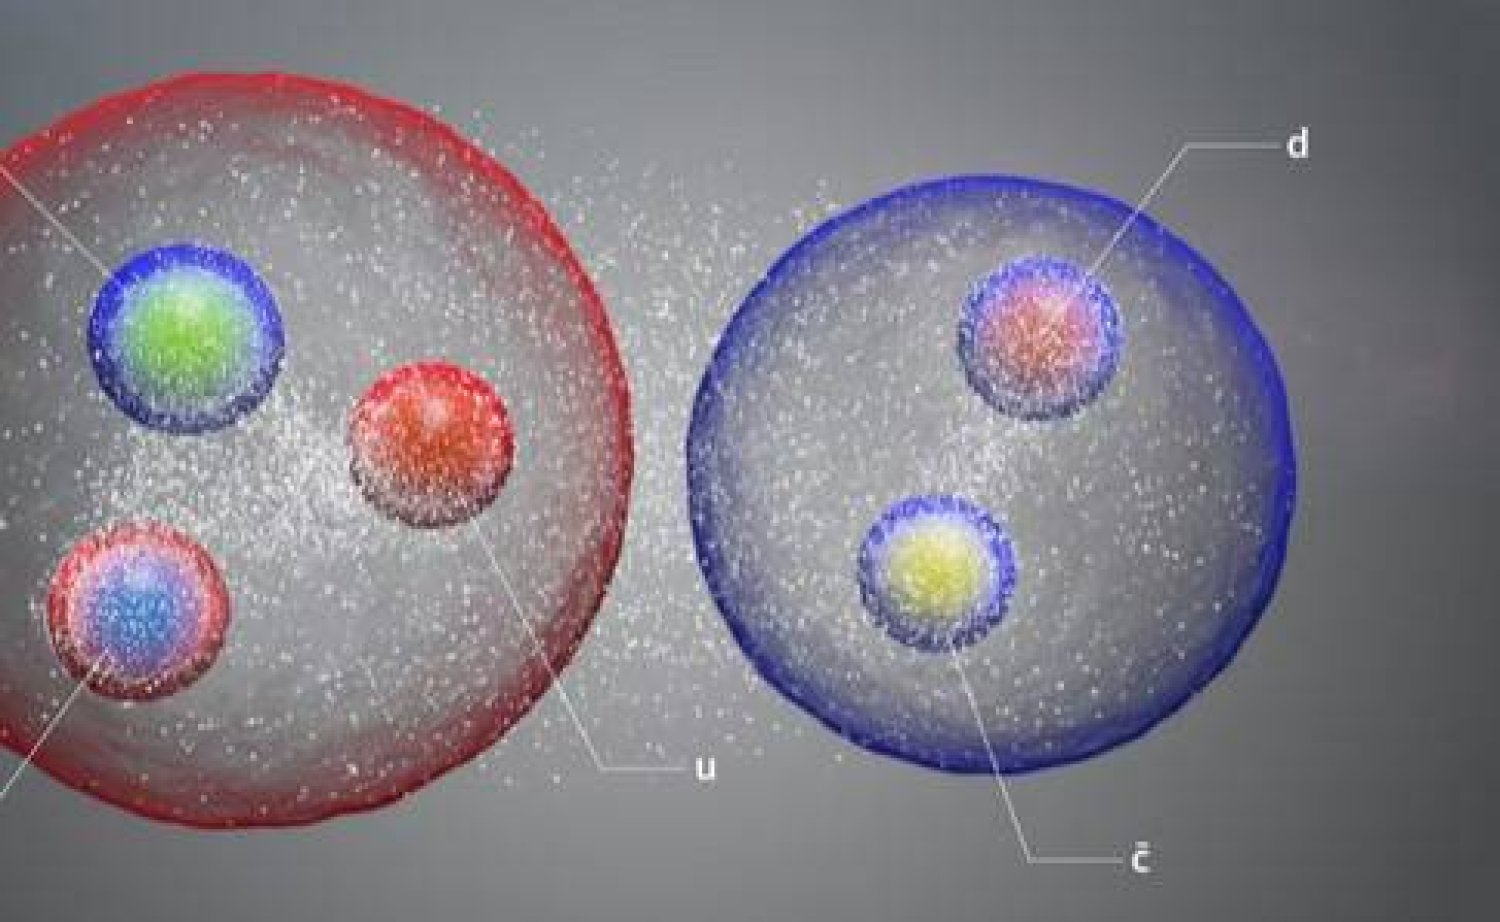 كتلة النيوترينو أصغر بعشرة مليارات مرة من كتلة البروتون (مواقع التواصل)